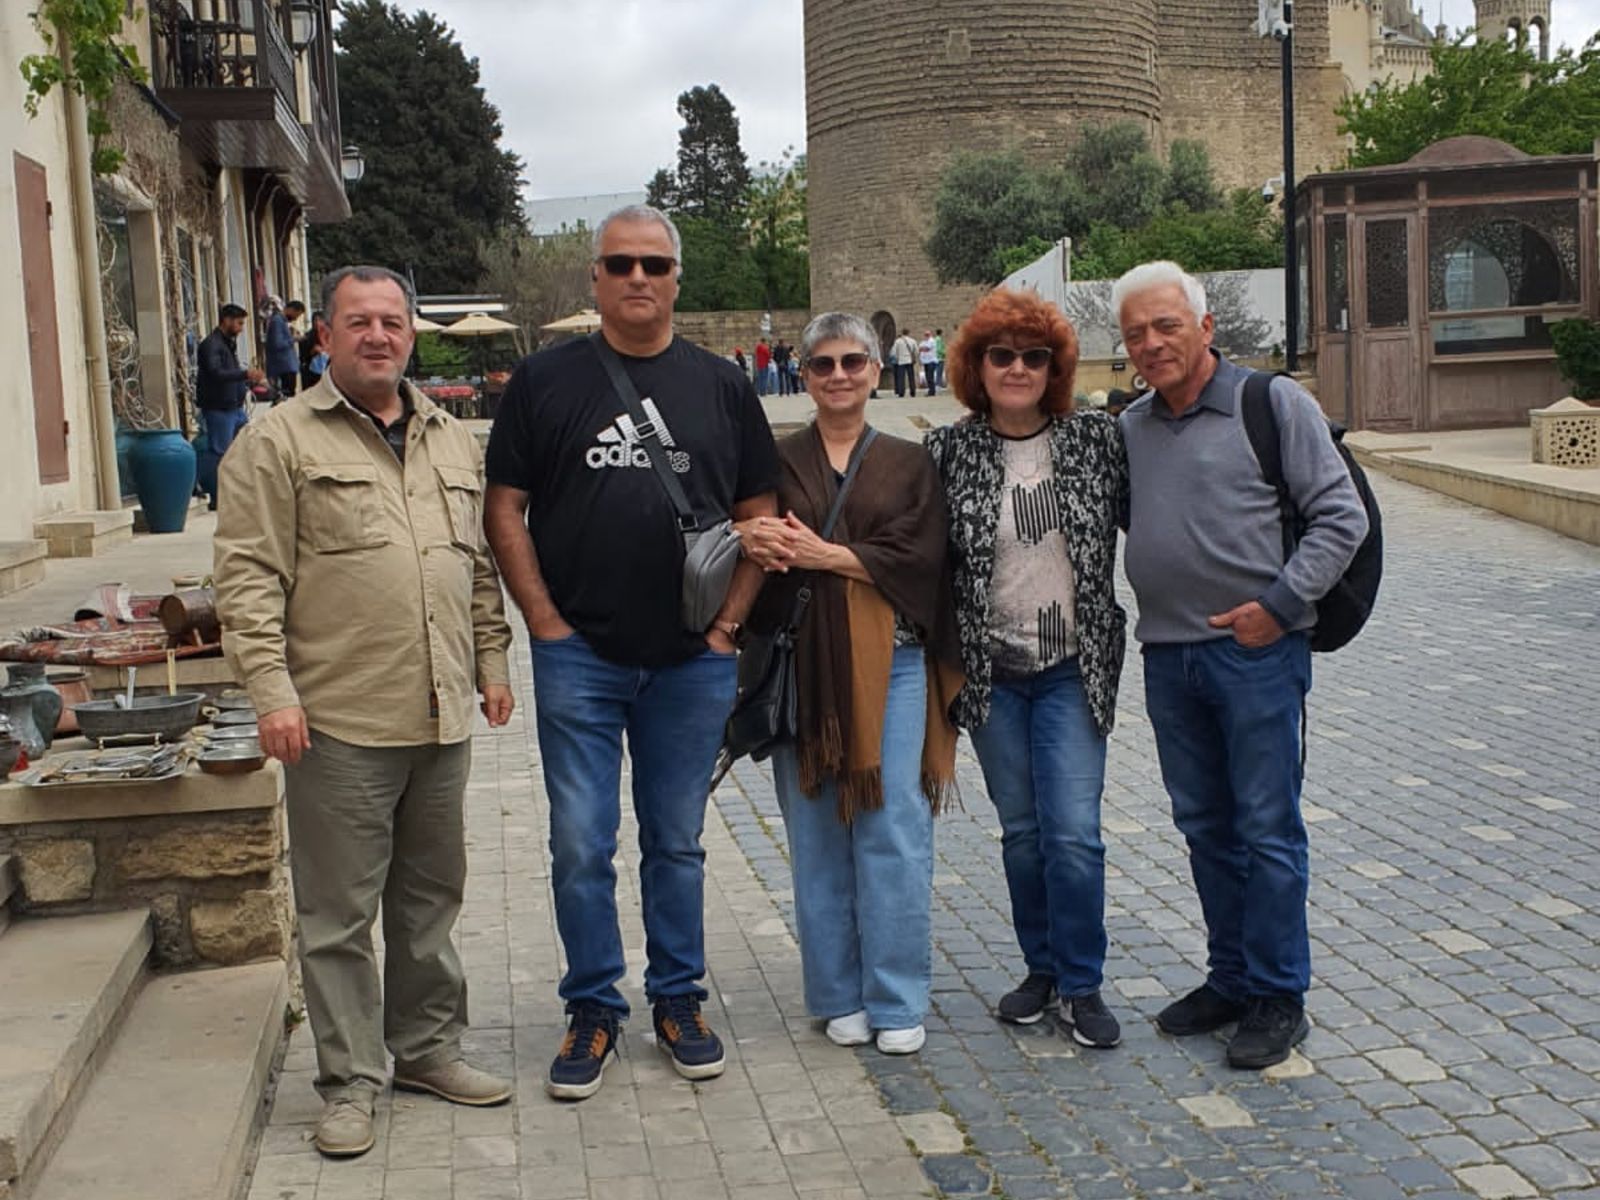 Улица Большая Крепостная в Старом городе. С гостями из Израиля